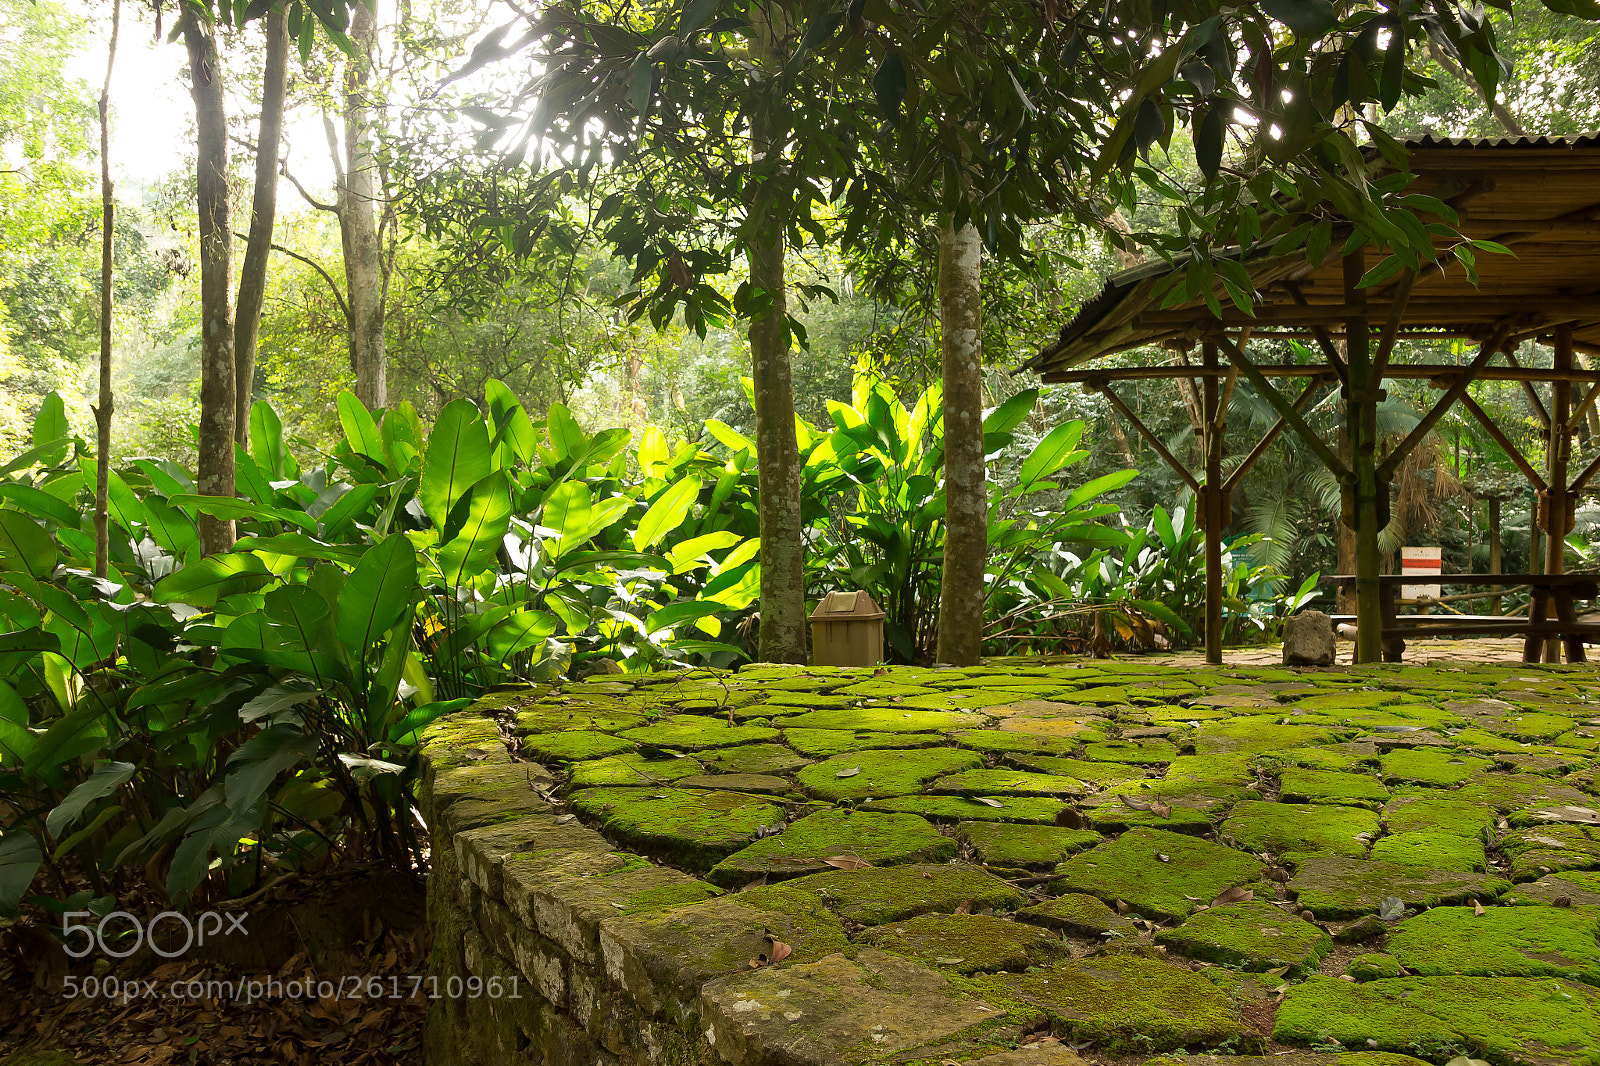 Canon EOS 550D (EOS Rebel T2i / EOS Kiss X4) sample photo. Botanical garden of brazil photography